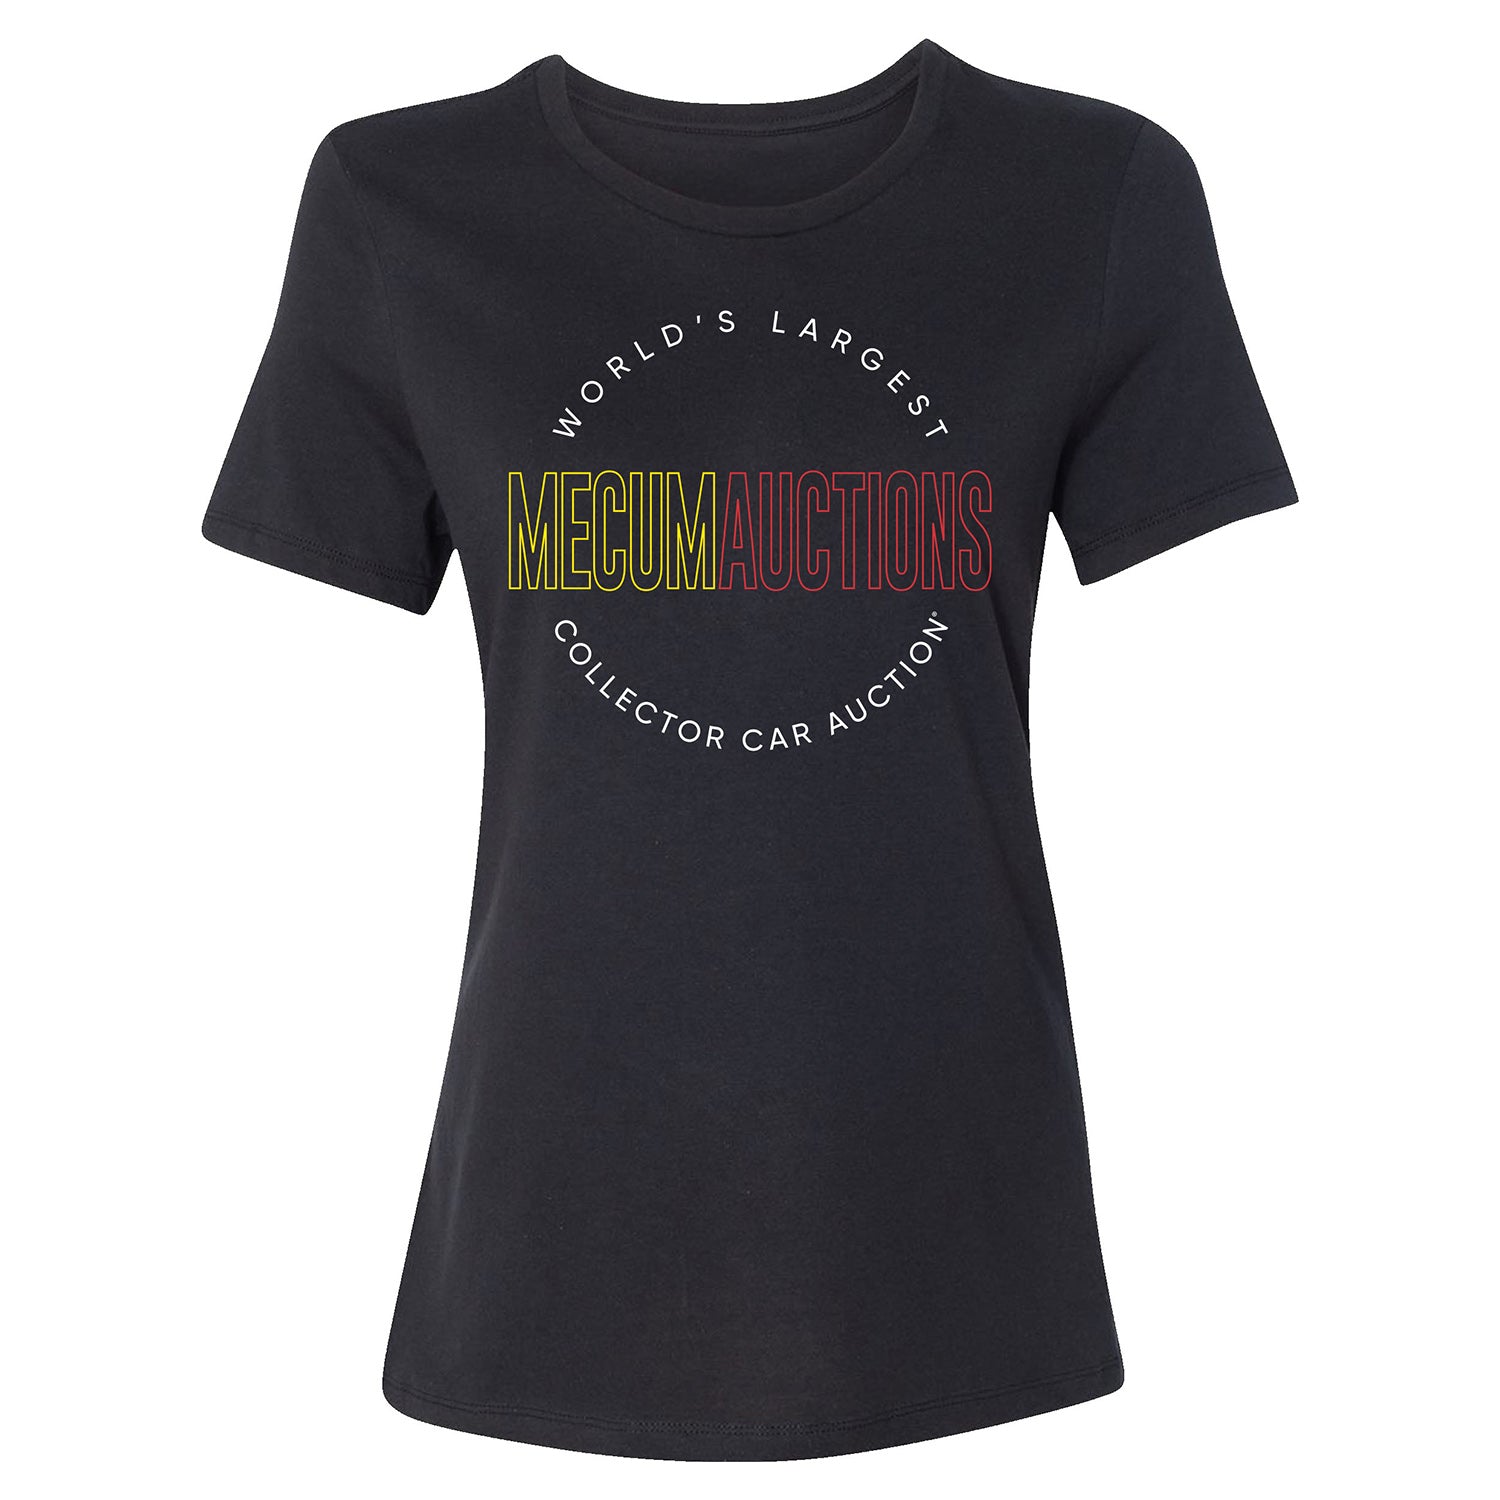 Mecum Auctions Ladies Black Circle Text T-Shirt - Front View